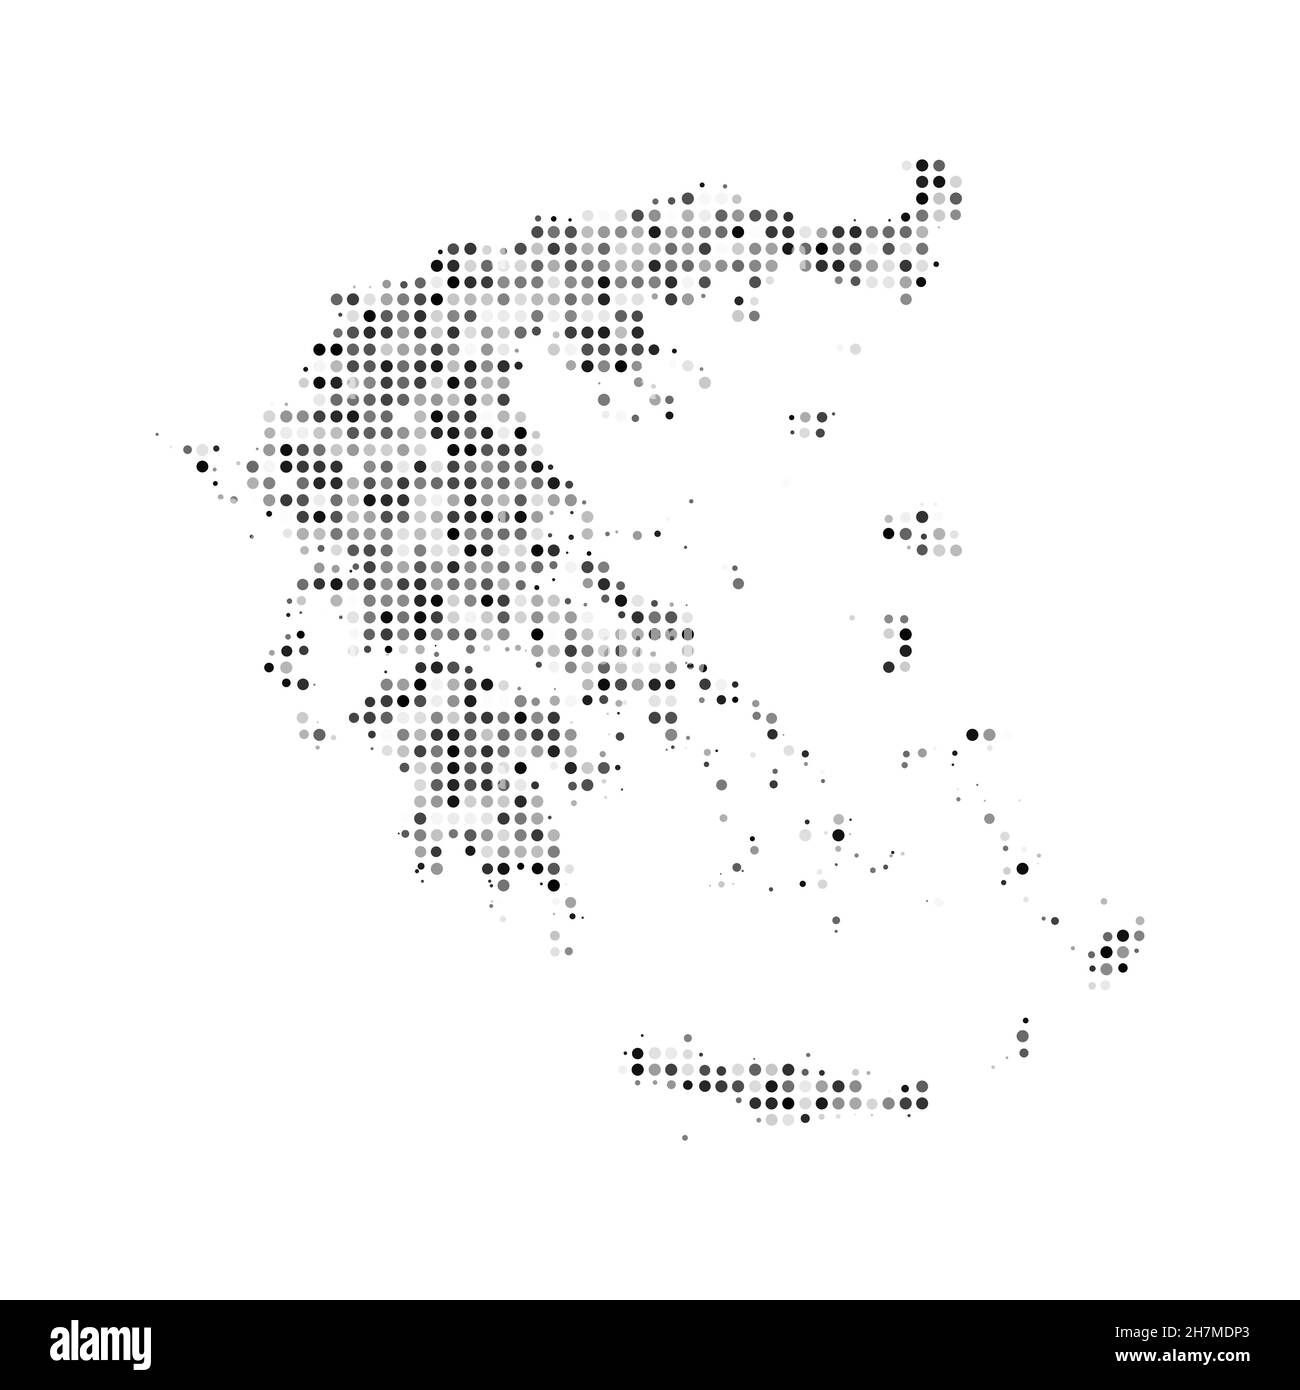 Mappa vettoriale astratta punteggiata nera e bianca effetto mezzitoni della Grecia. Illustrazione vettoriale digitale con disegno punteggiato della mappa del paese. Illustrazione Vettoriale